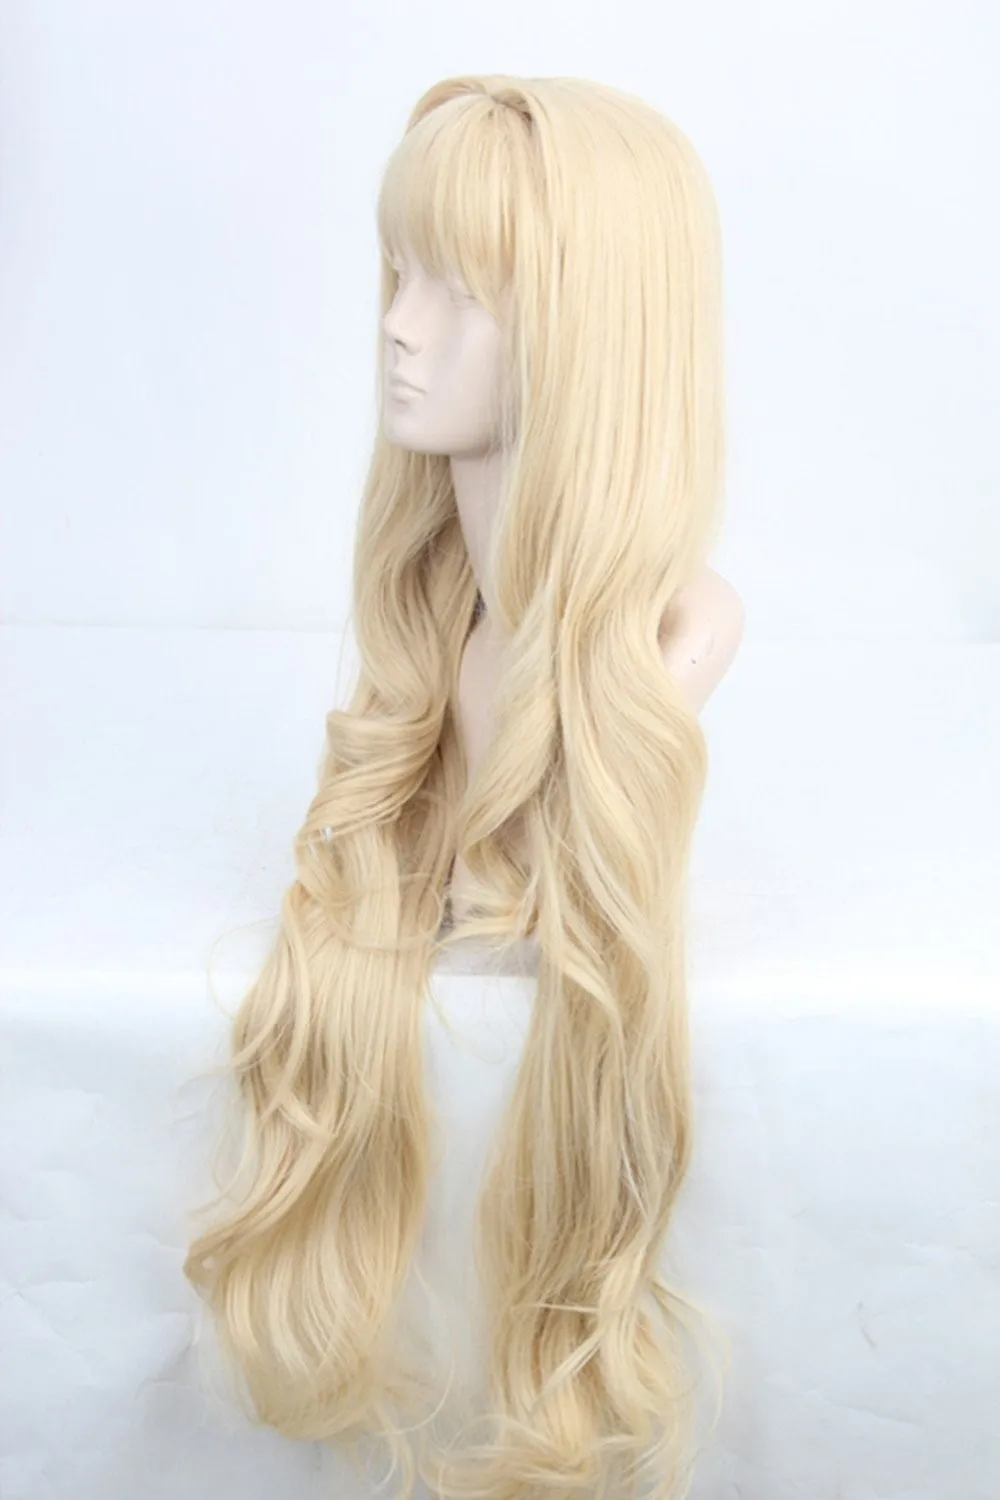 Ccutoo Volcaloid3 SEEU, 100 см светильник блонд вьющиеся Длинные Синтетические волосы Косплей Костюм парик Термостойкое волокно